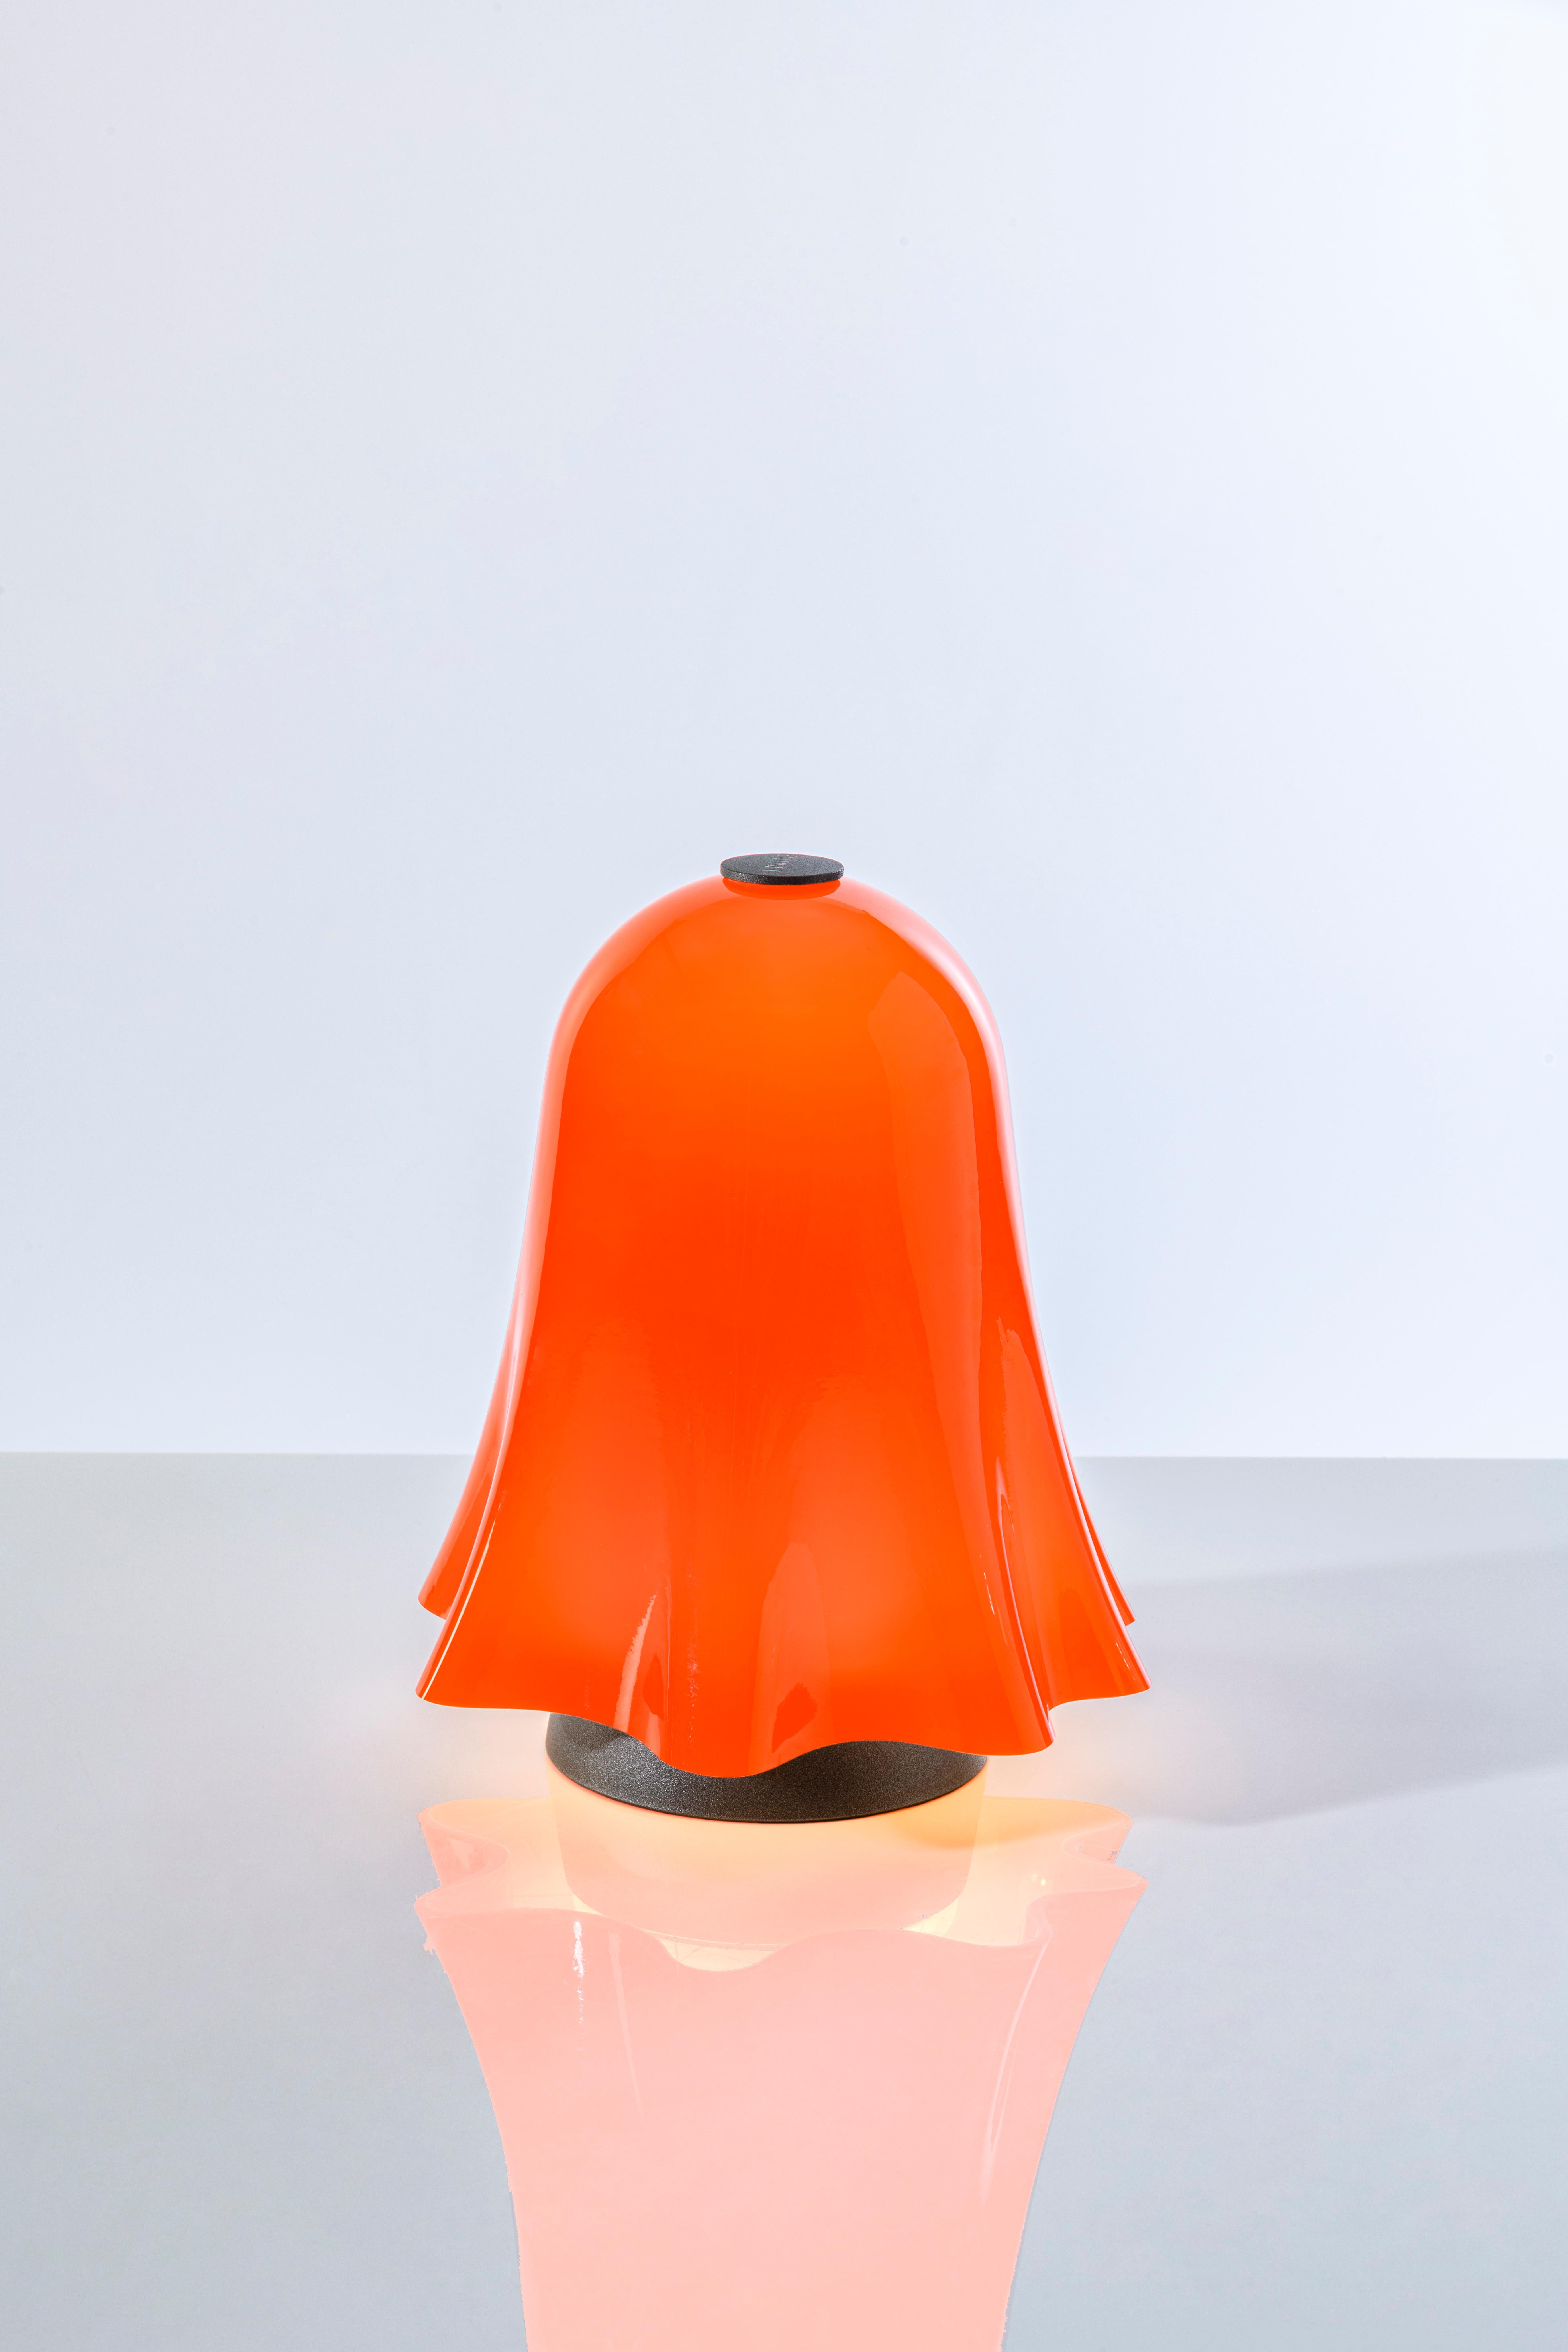 Fait main Lampe Venini orange, rechargeable, gradable, touchable  en vente